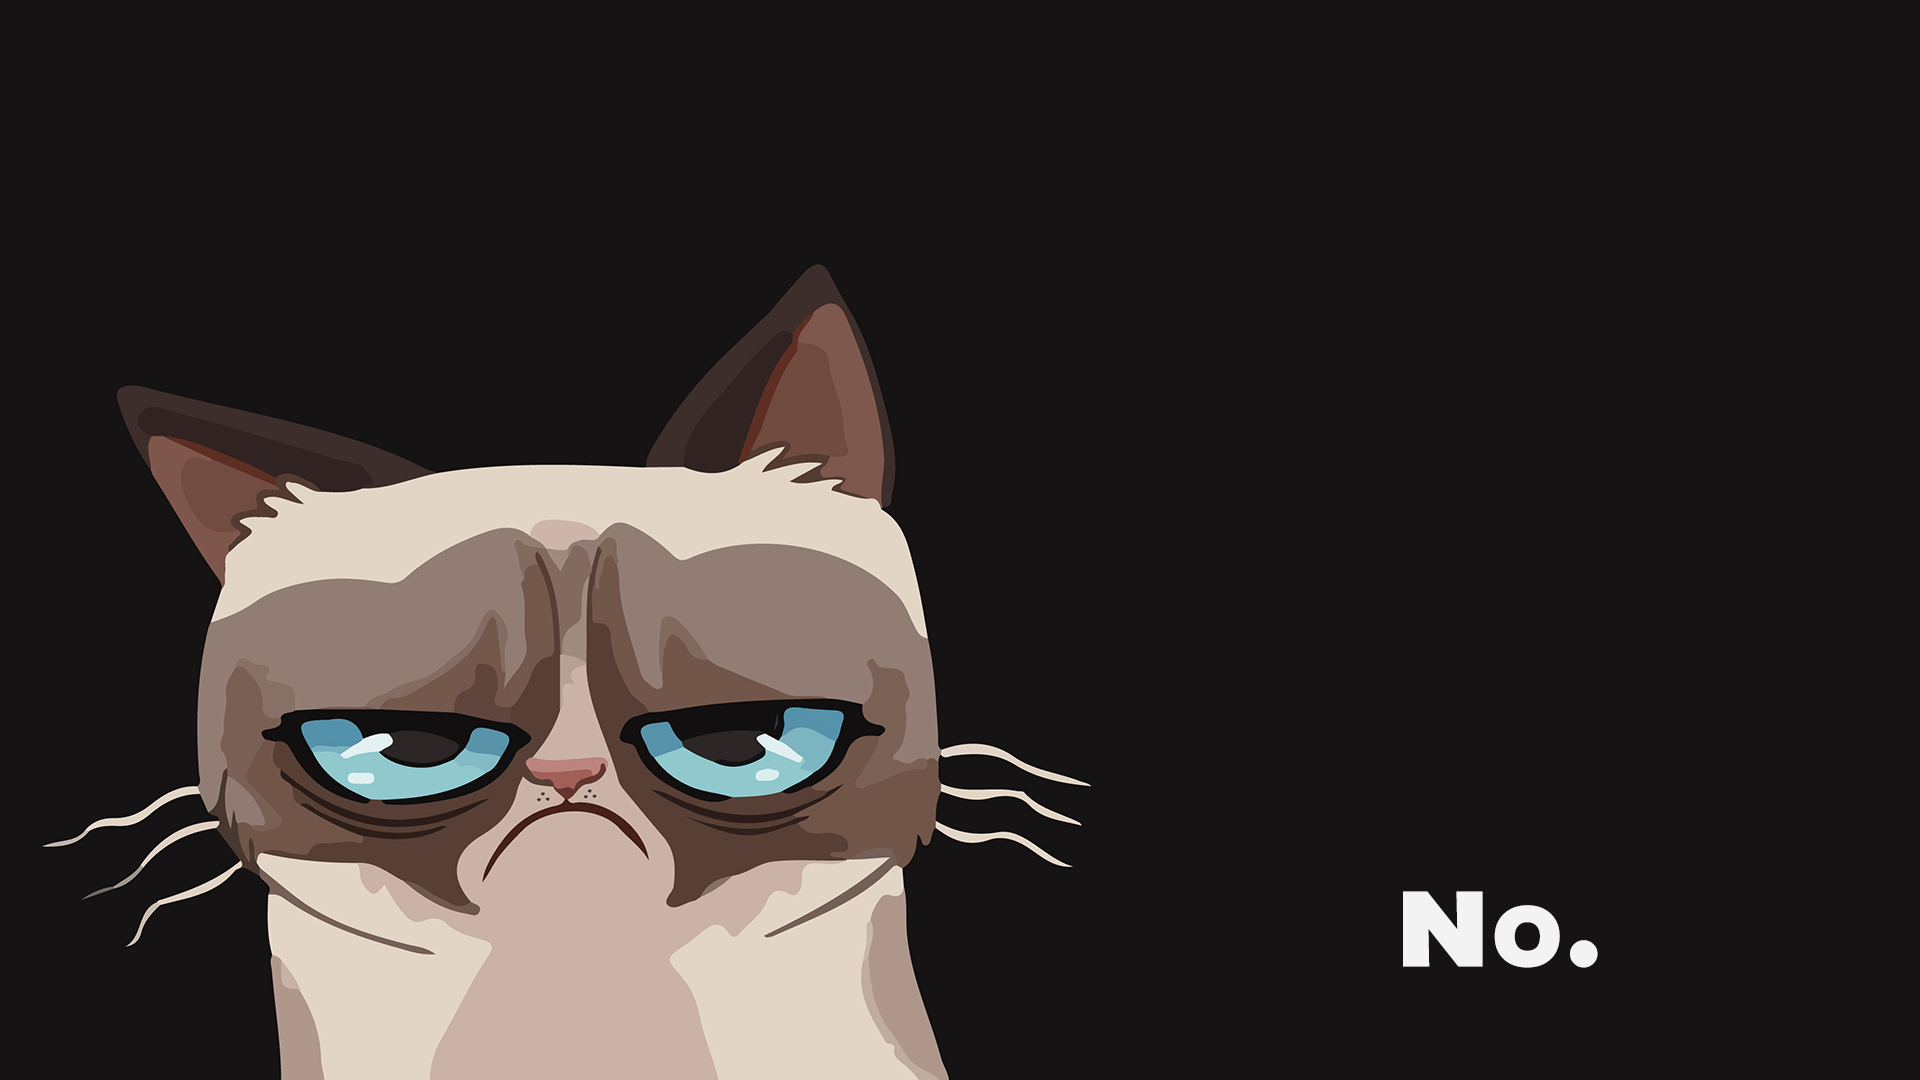 Grumpy Cat Wallpaper